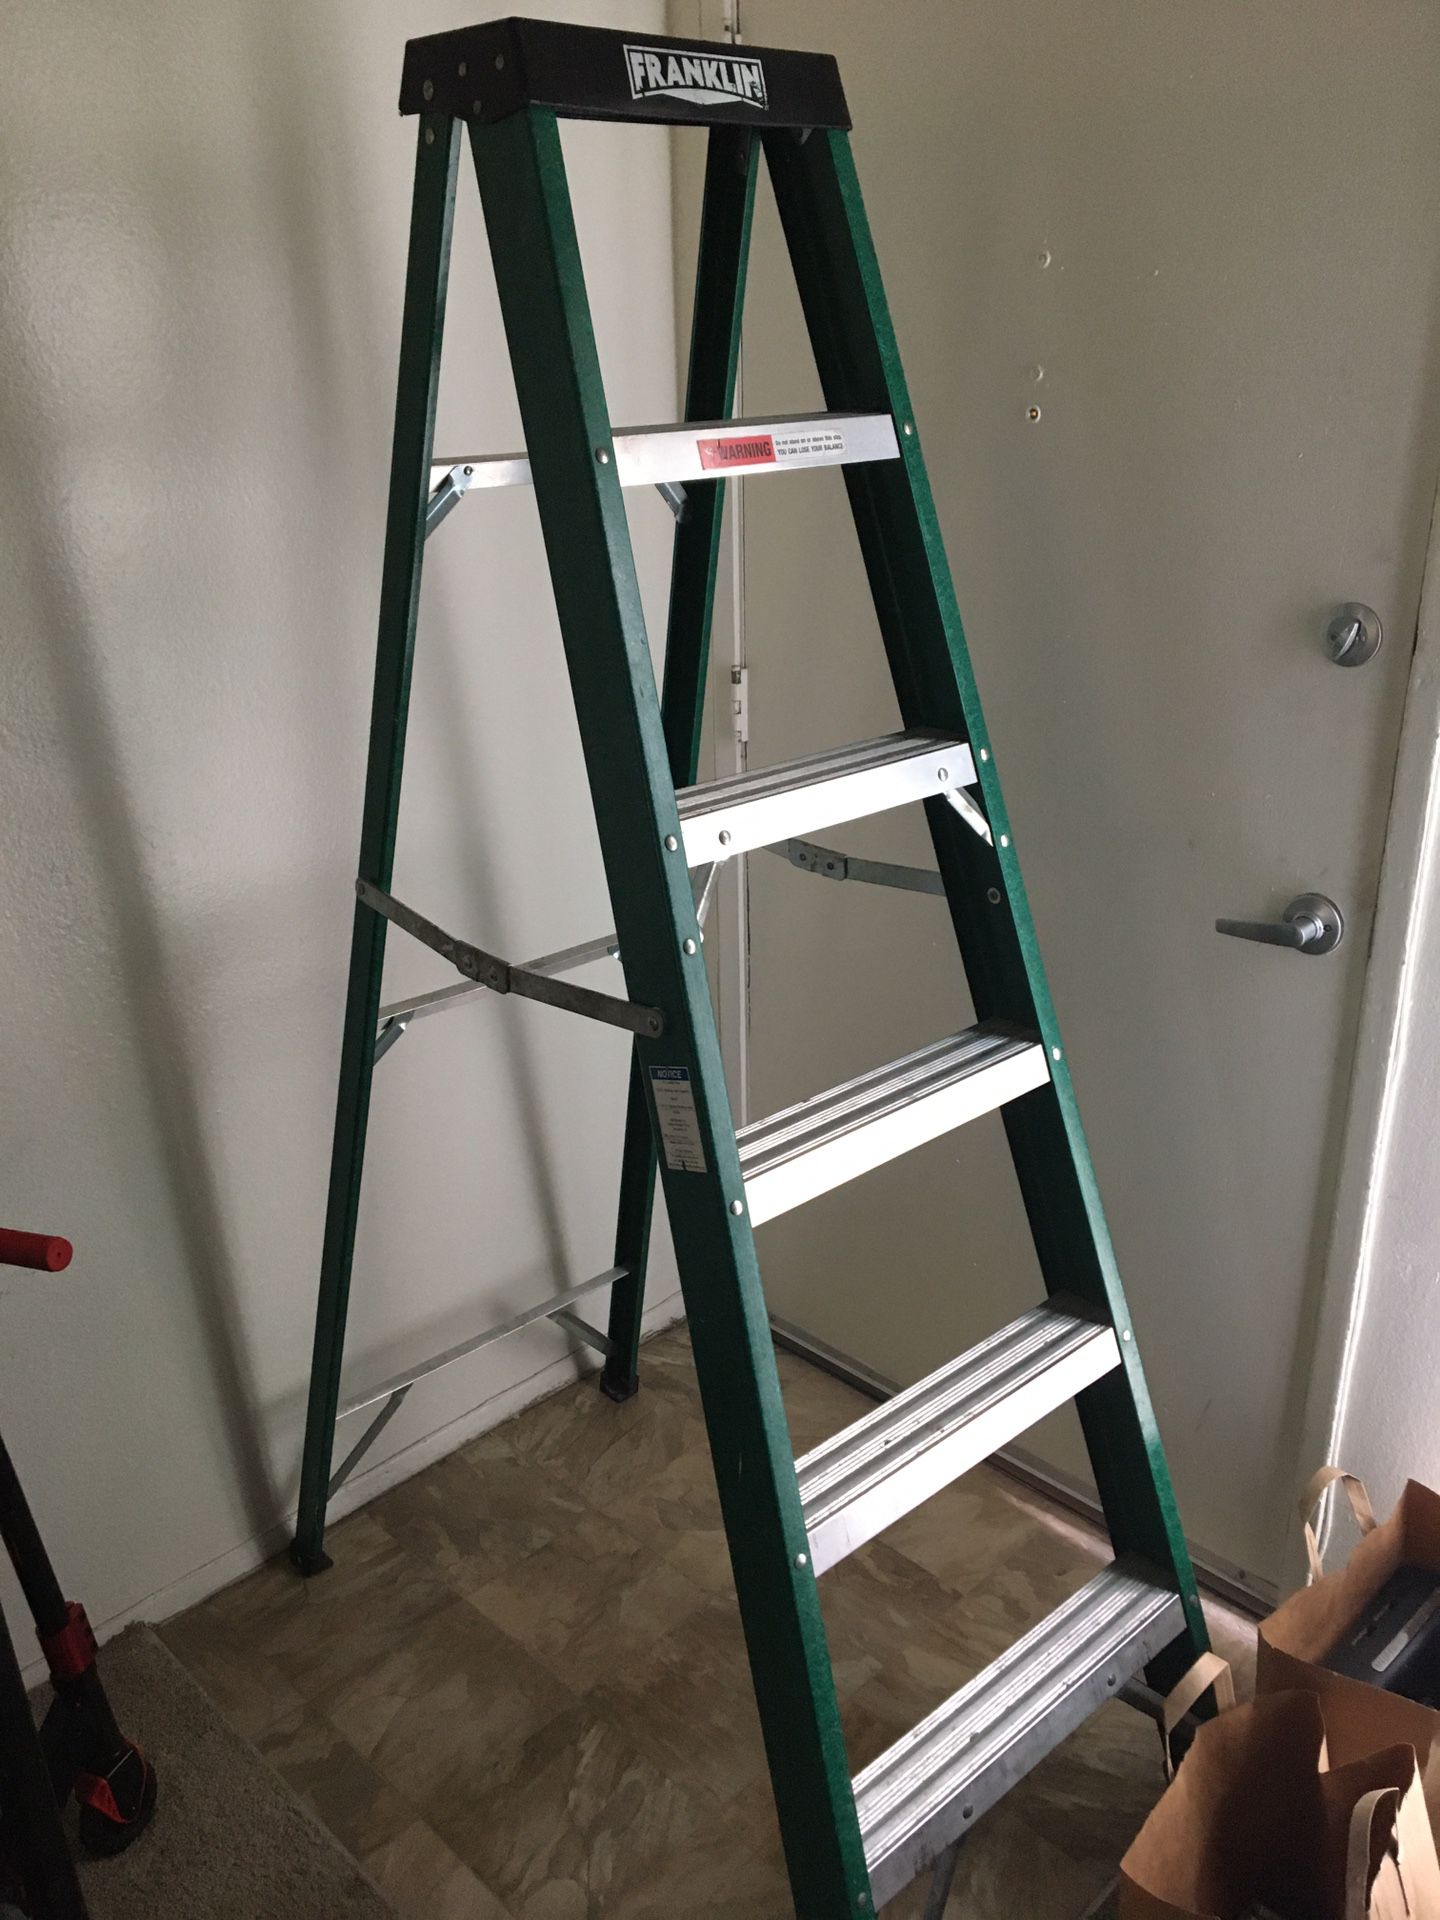 Franklin 6ft Ladder